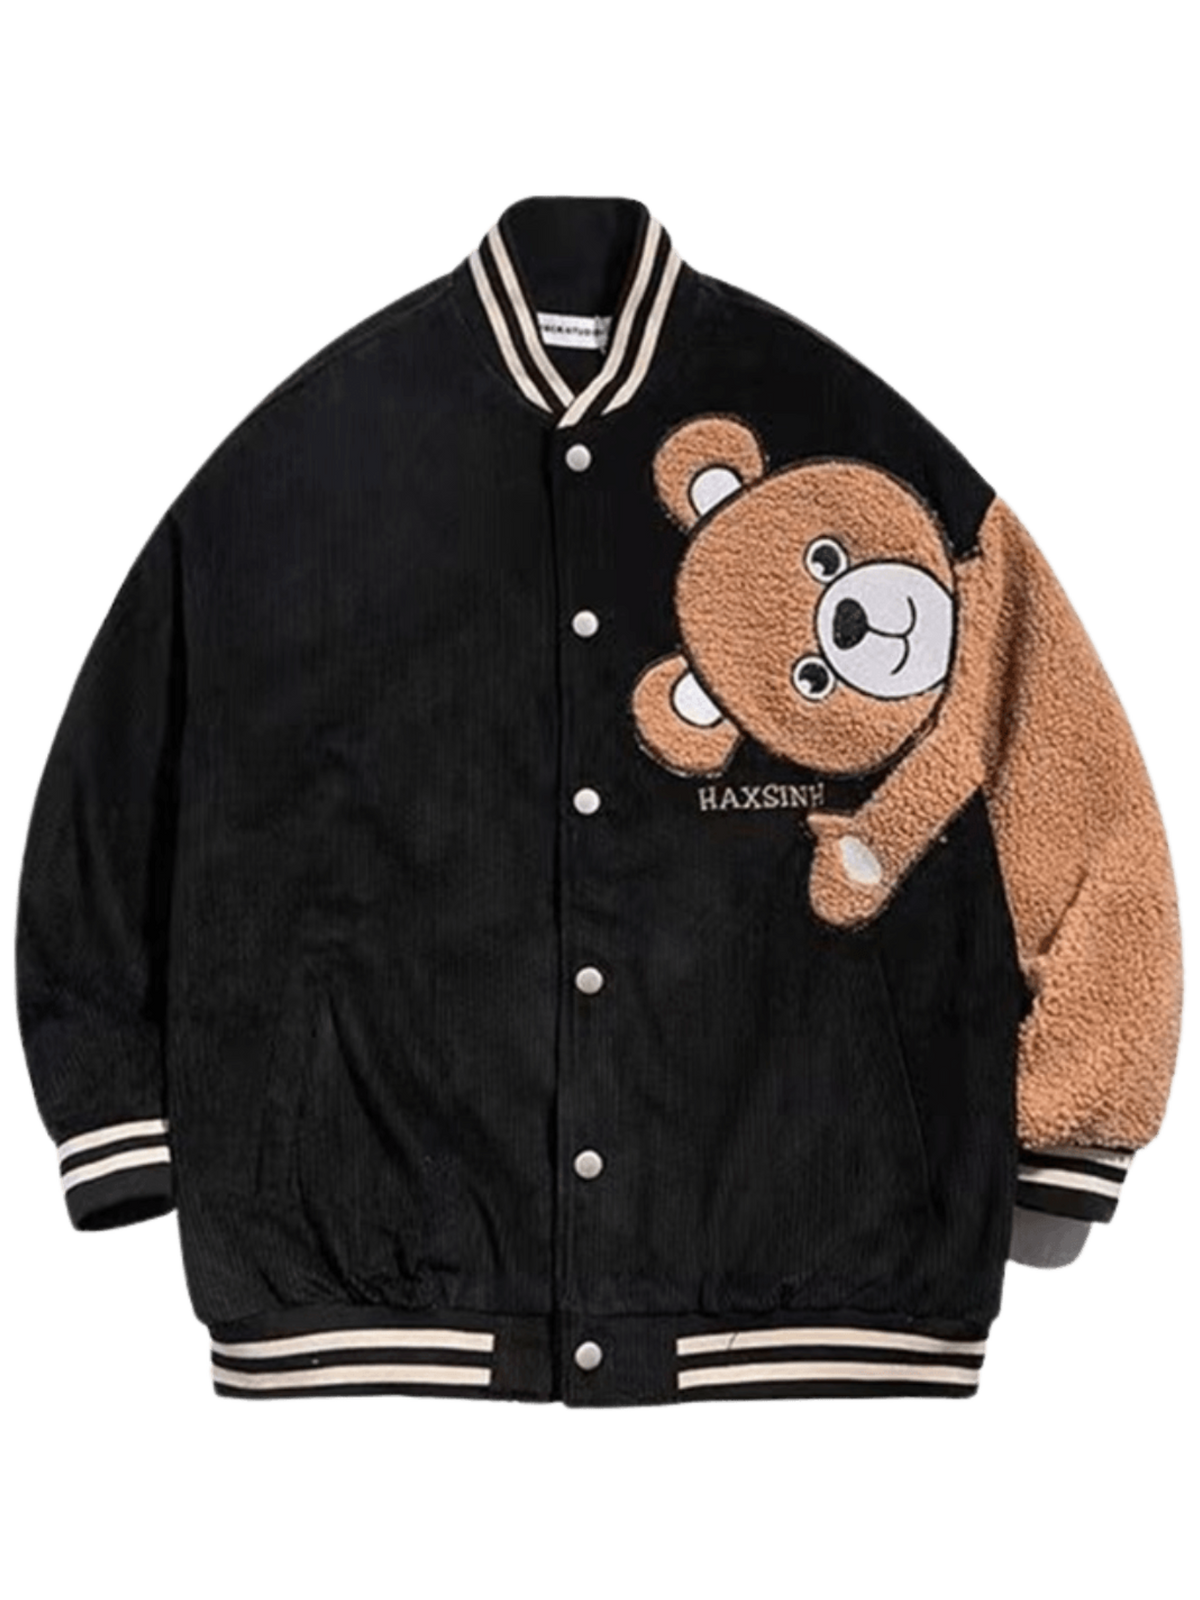 LUXENFY™ - Black Bear Flocking Varsity Jacket luxenfy.com